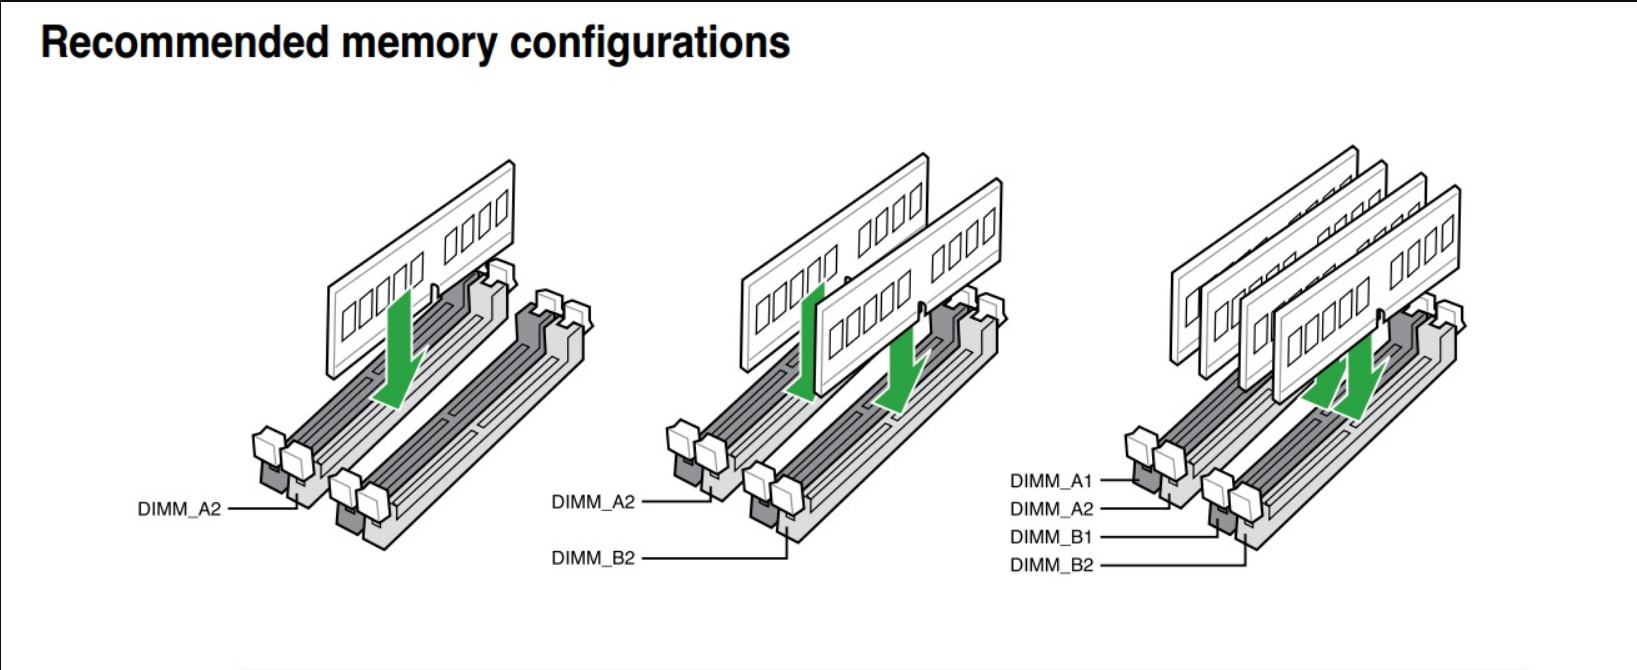 Память 4 канала. Как поставить 3 планки оперативной памяти ddr3. Как правильно ставить планки оперативной памяти ddr3. Двухканальный режим оперативной памяти MS-7390. Двухканальный режим оперативной памяти ddr3.